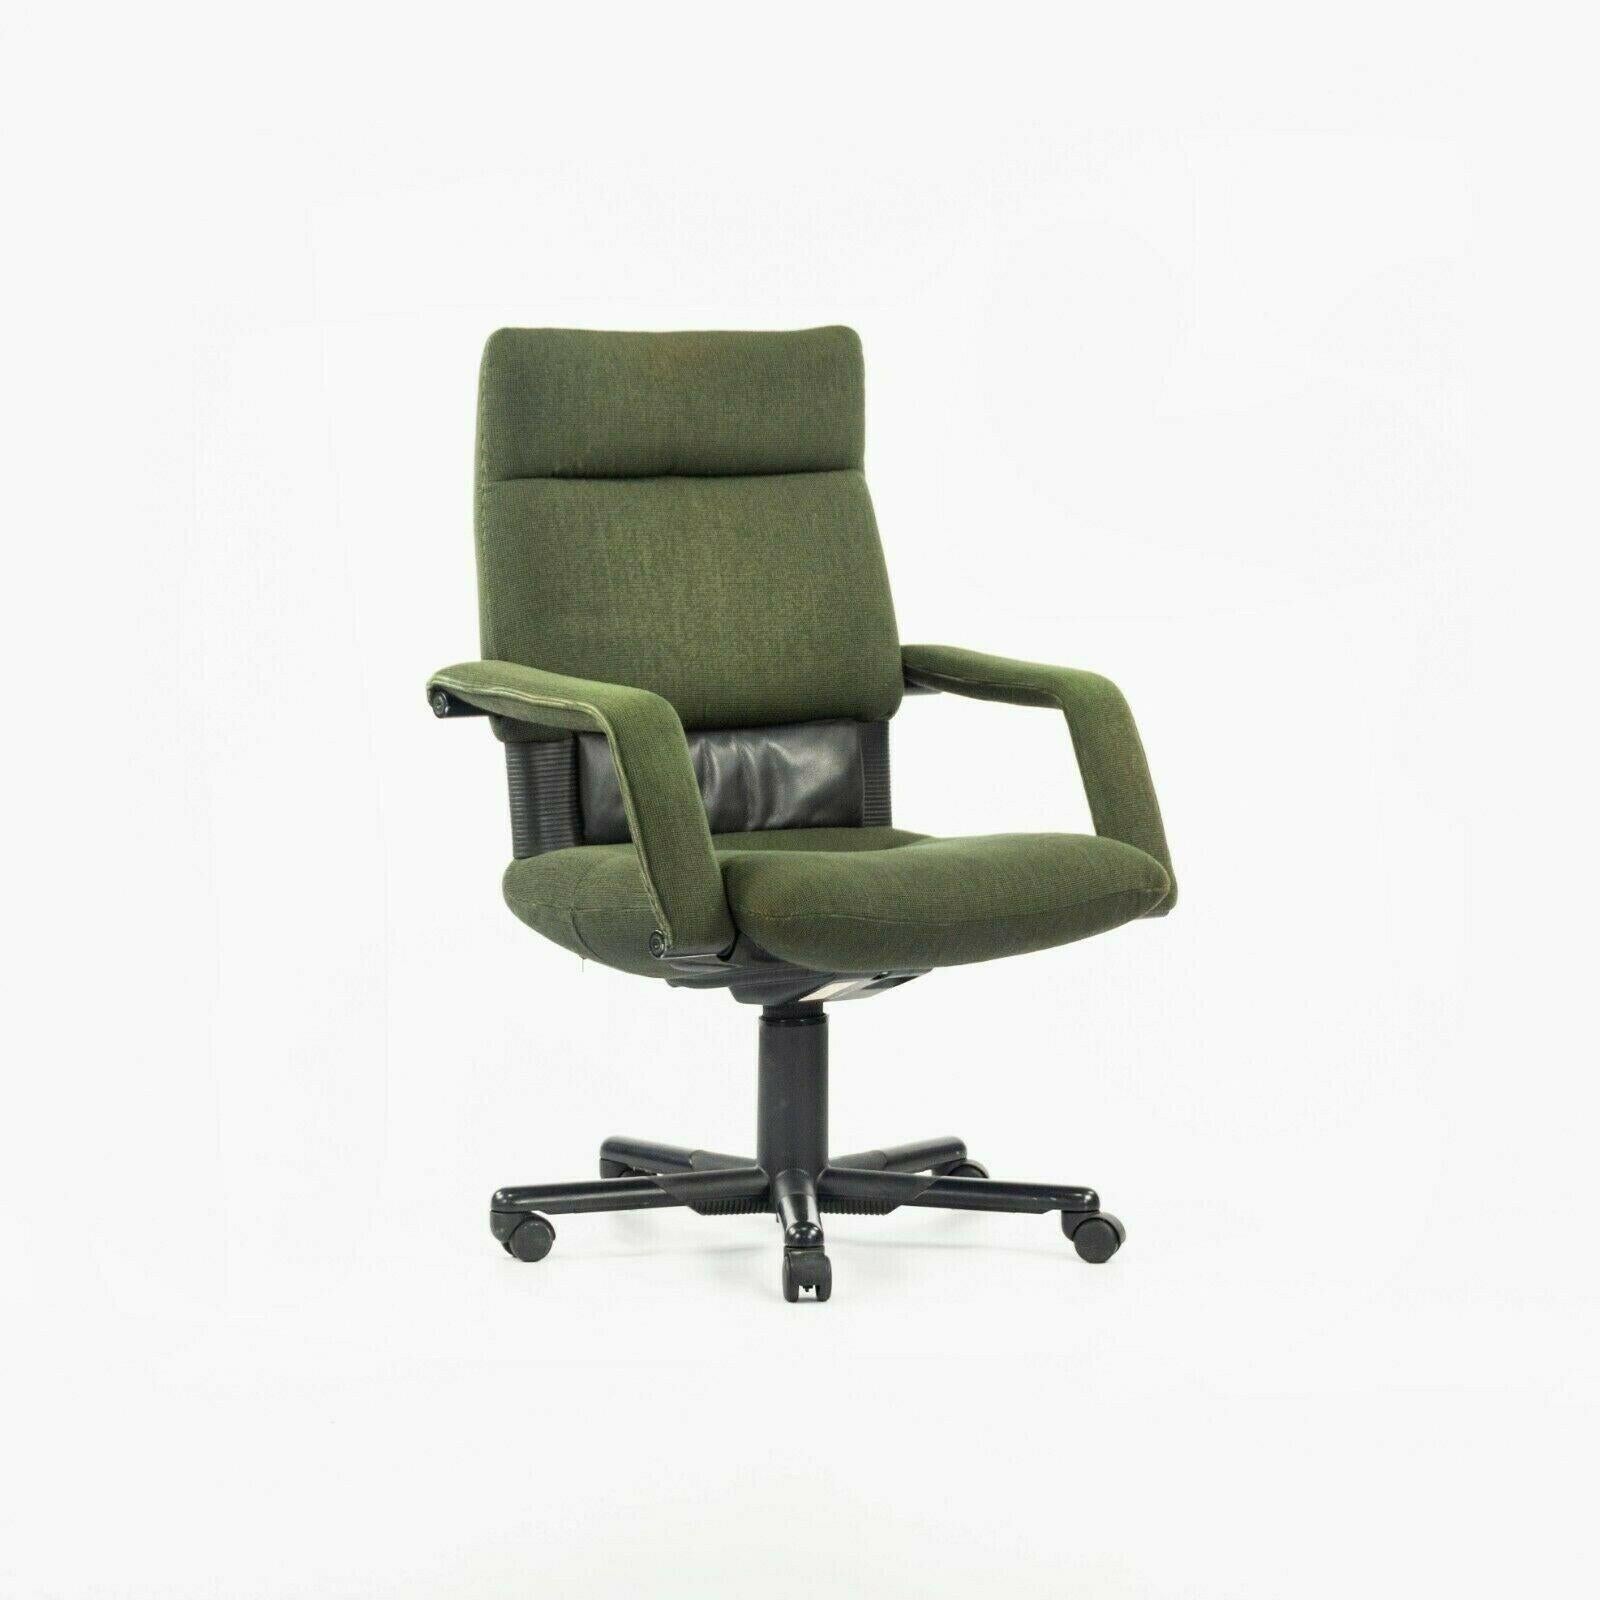 Zum Verkauf steht ein einzelner (zwei sind verfügbar, aber der Preis gilt für jeden Stuhl) Figura Schreibtischstuhl von Vitra aus dem Jahr 1997, entworfen von Mario Bellini. Es handelt sich um wunderschöne Originale, die ihre ursprüngliche grüne